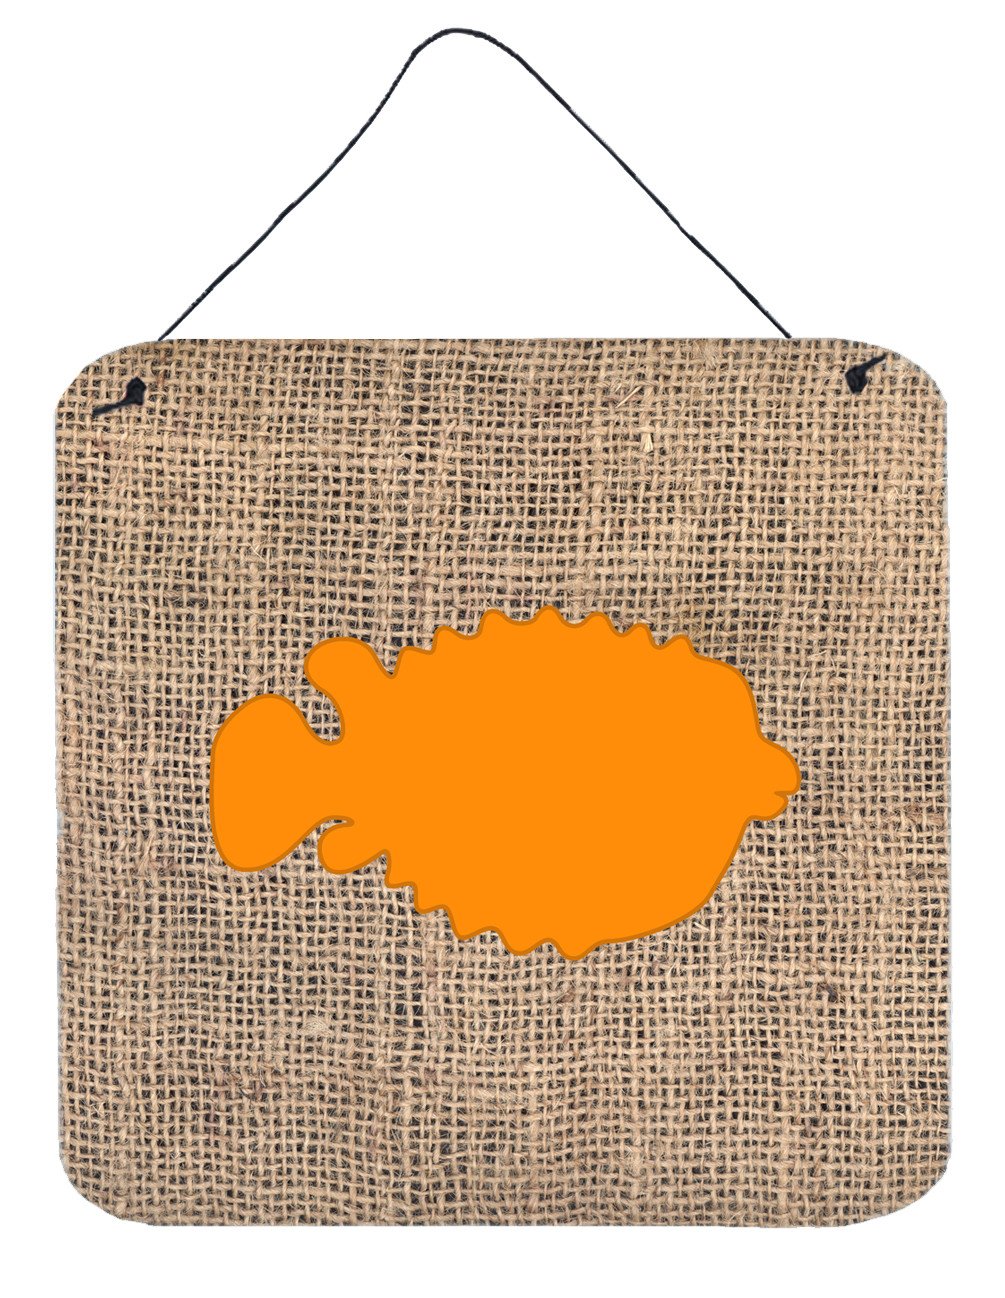 Fish - Blowfish Burlap and Orange Wall or Door Hanging Prints BB1016 by Caroline's Treasures